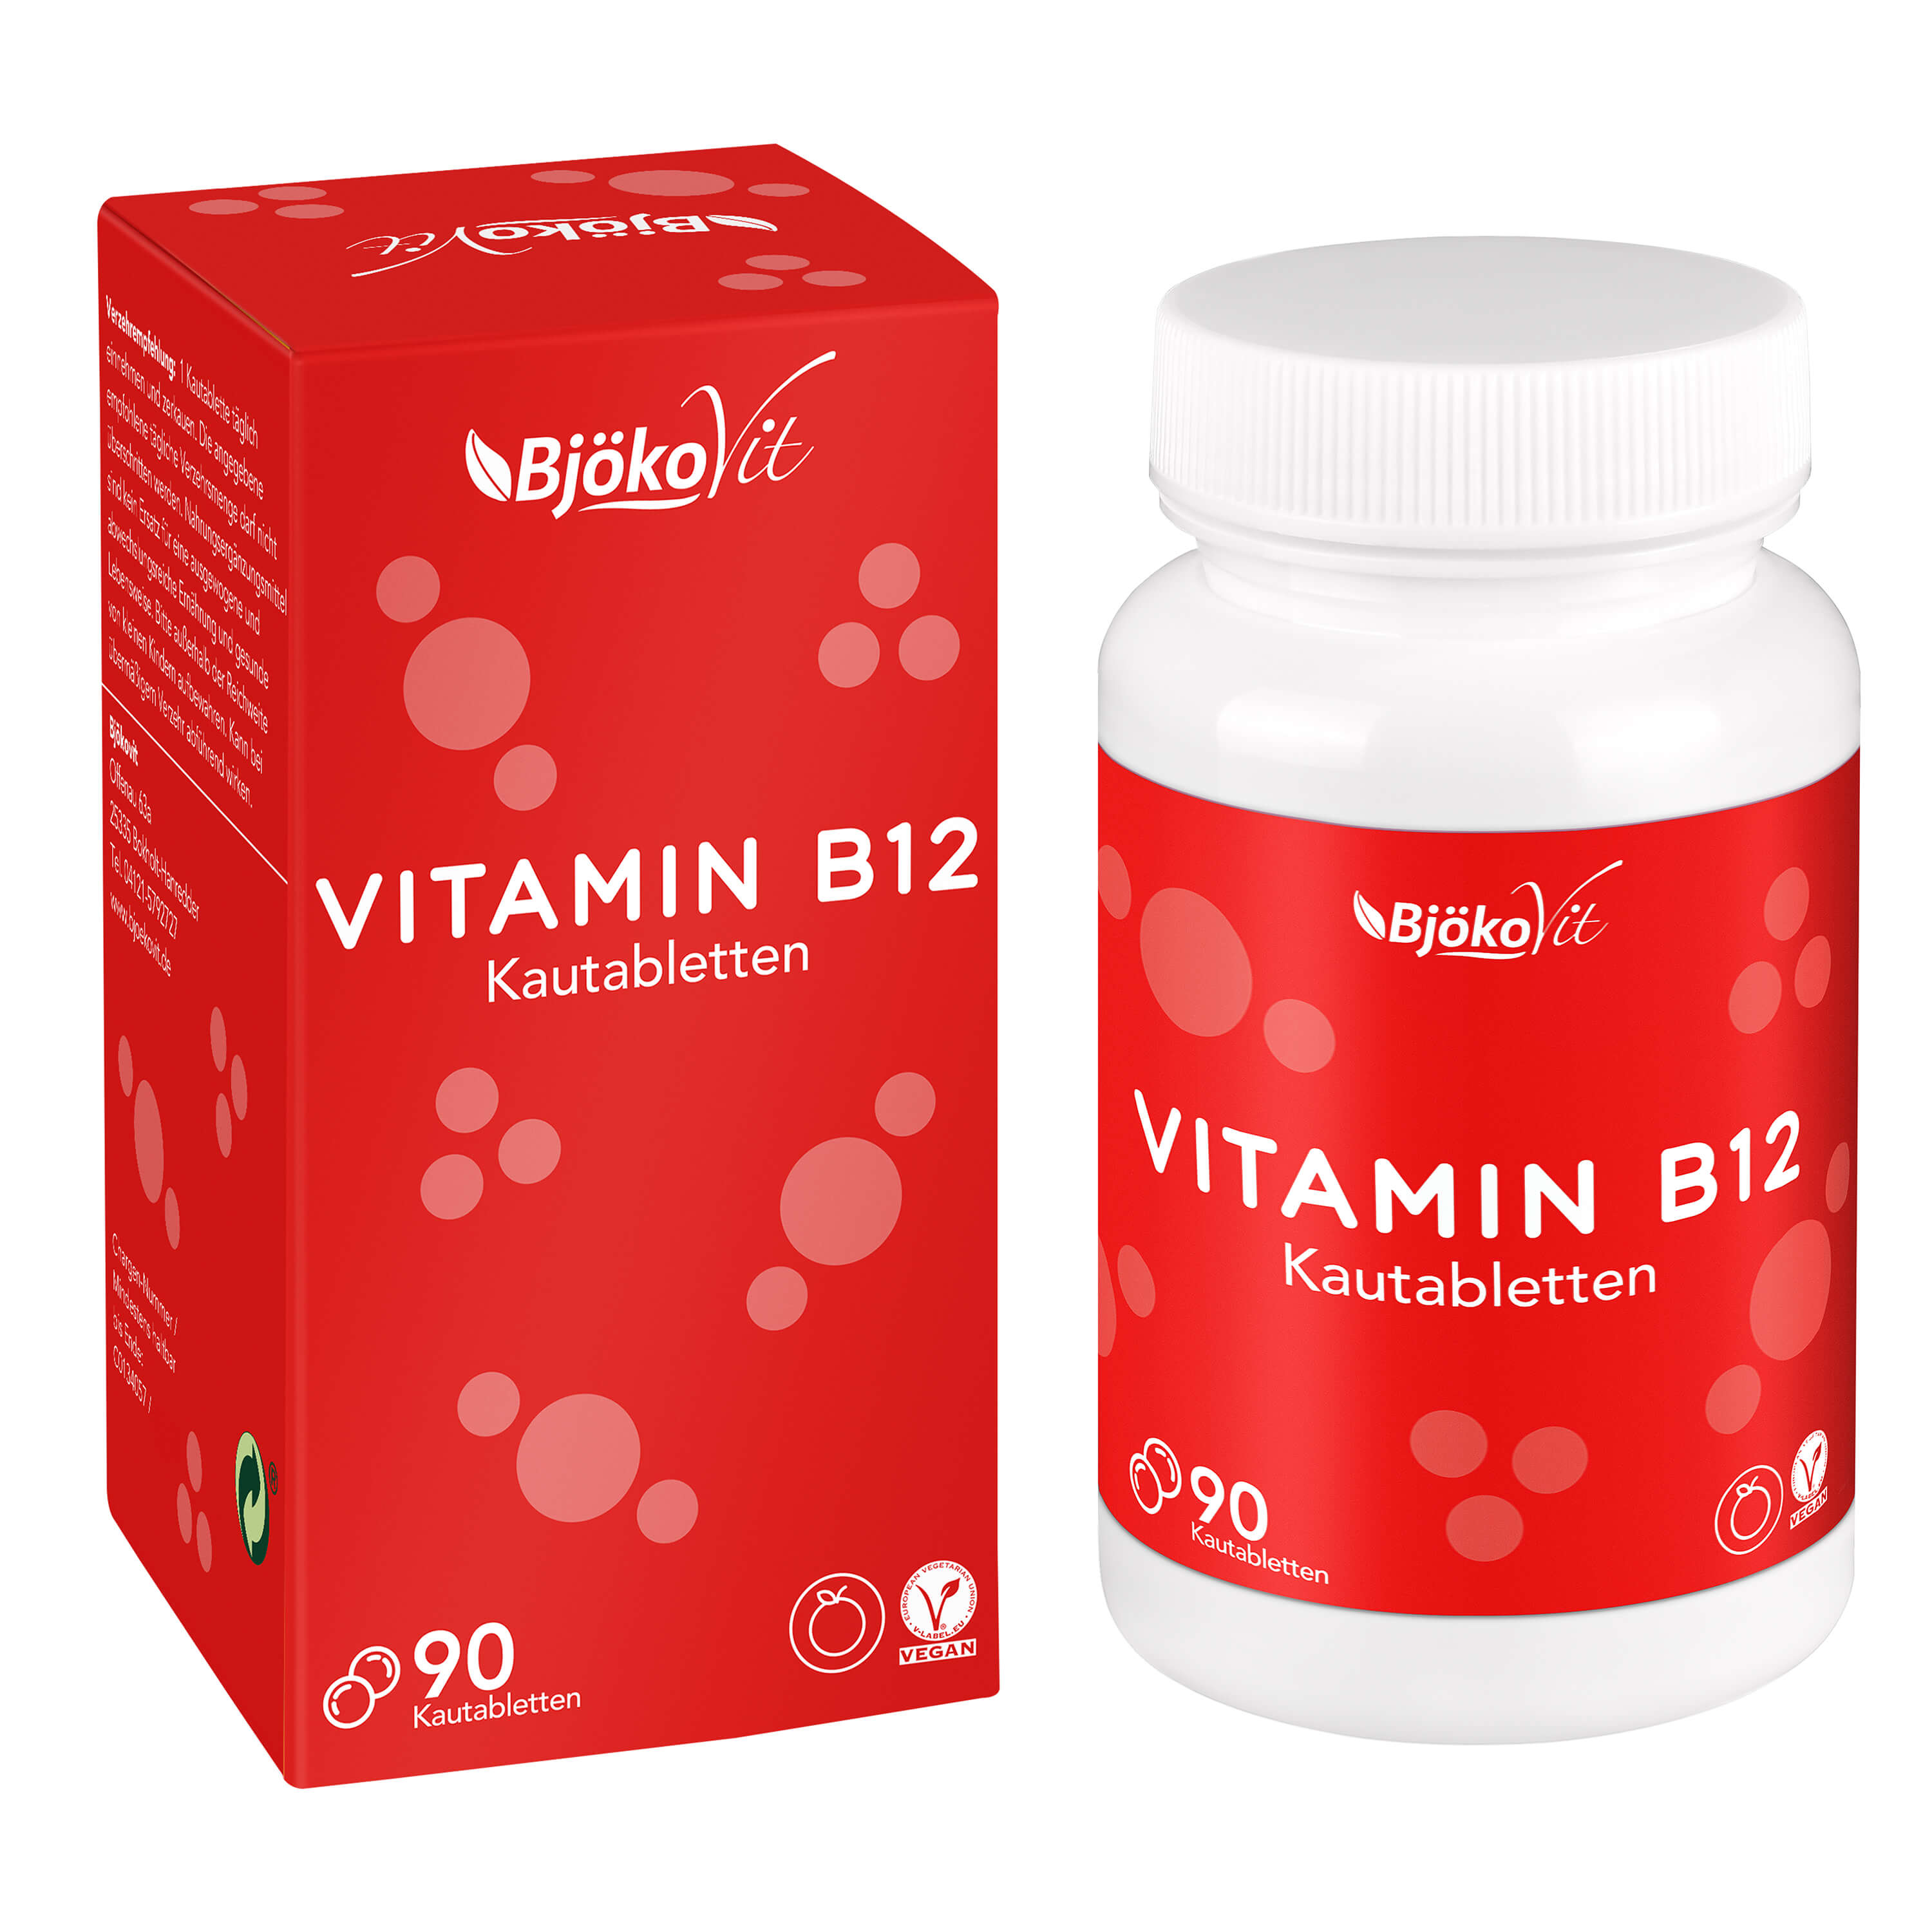 BjökoVit Vitamin B12 Kautabletten 500mcg vegan